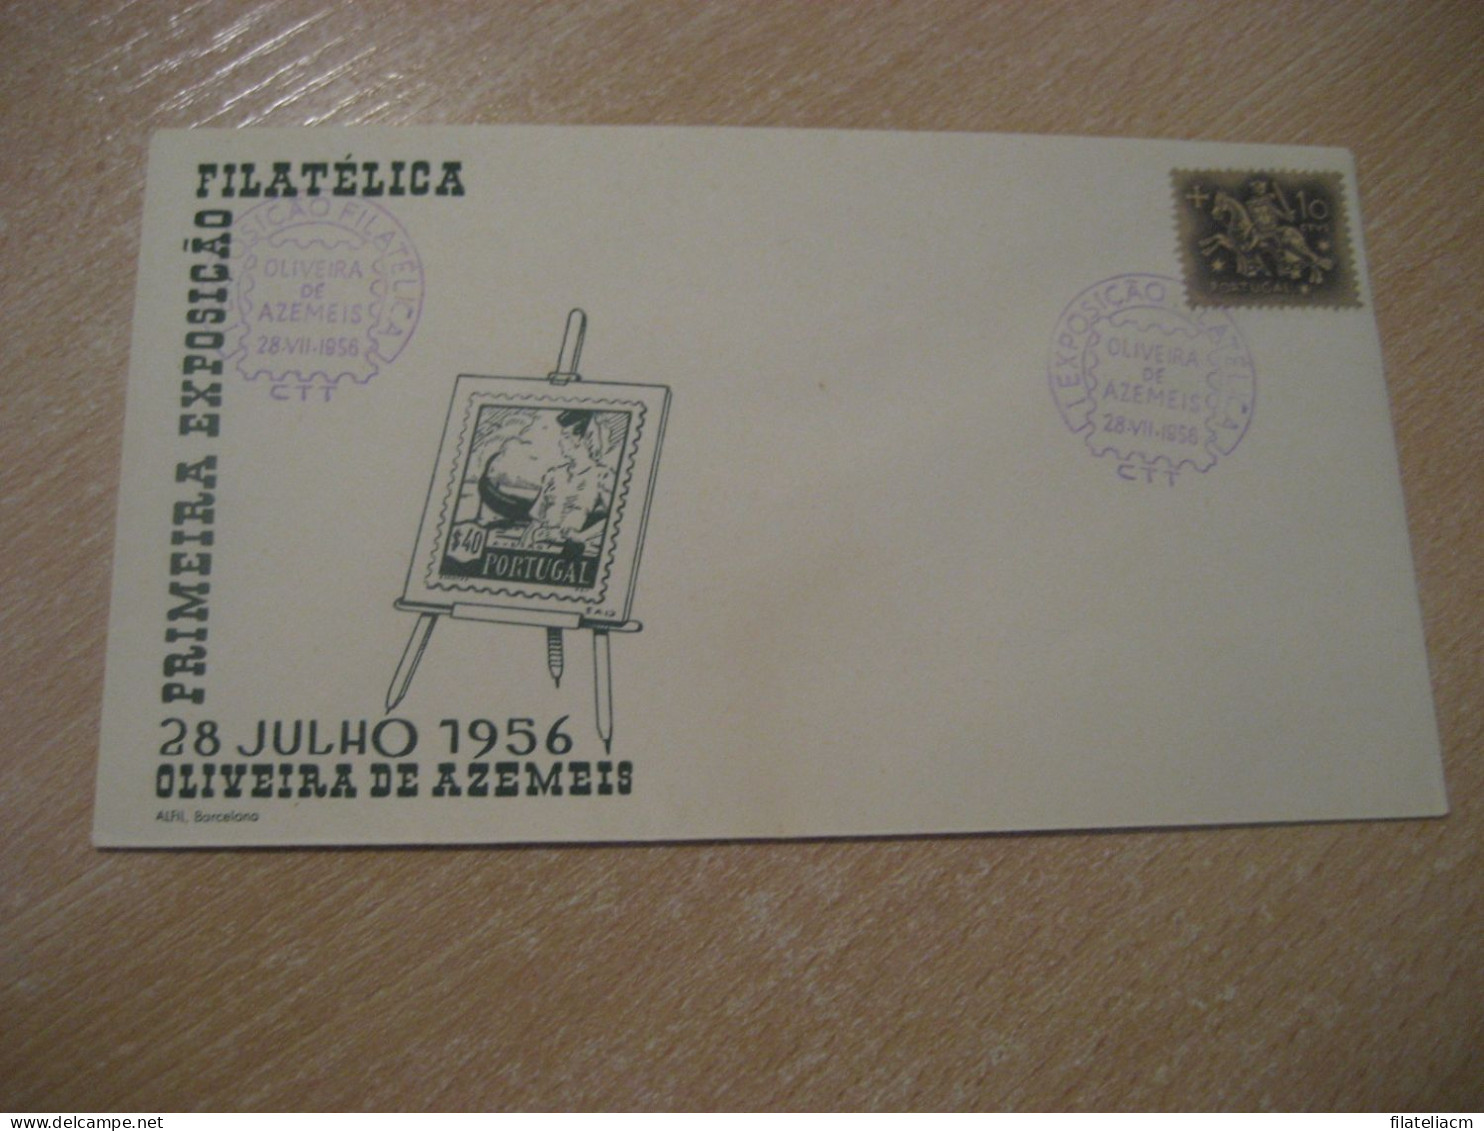 OLIVEIRA DE AZEMEIS 1956 Expo Filatelica Cancel Cover PORTUGAL - Cartas & Documentos